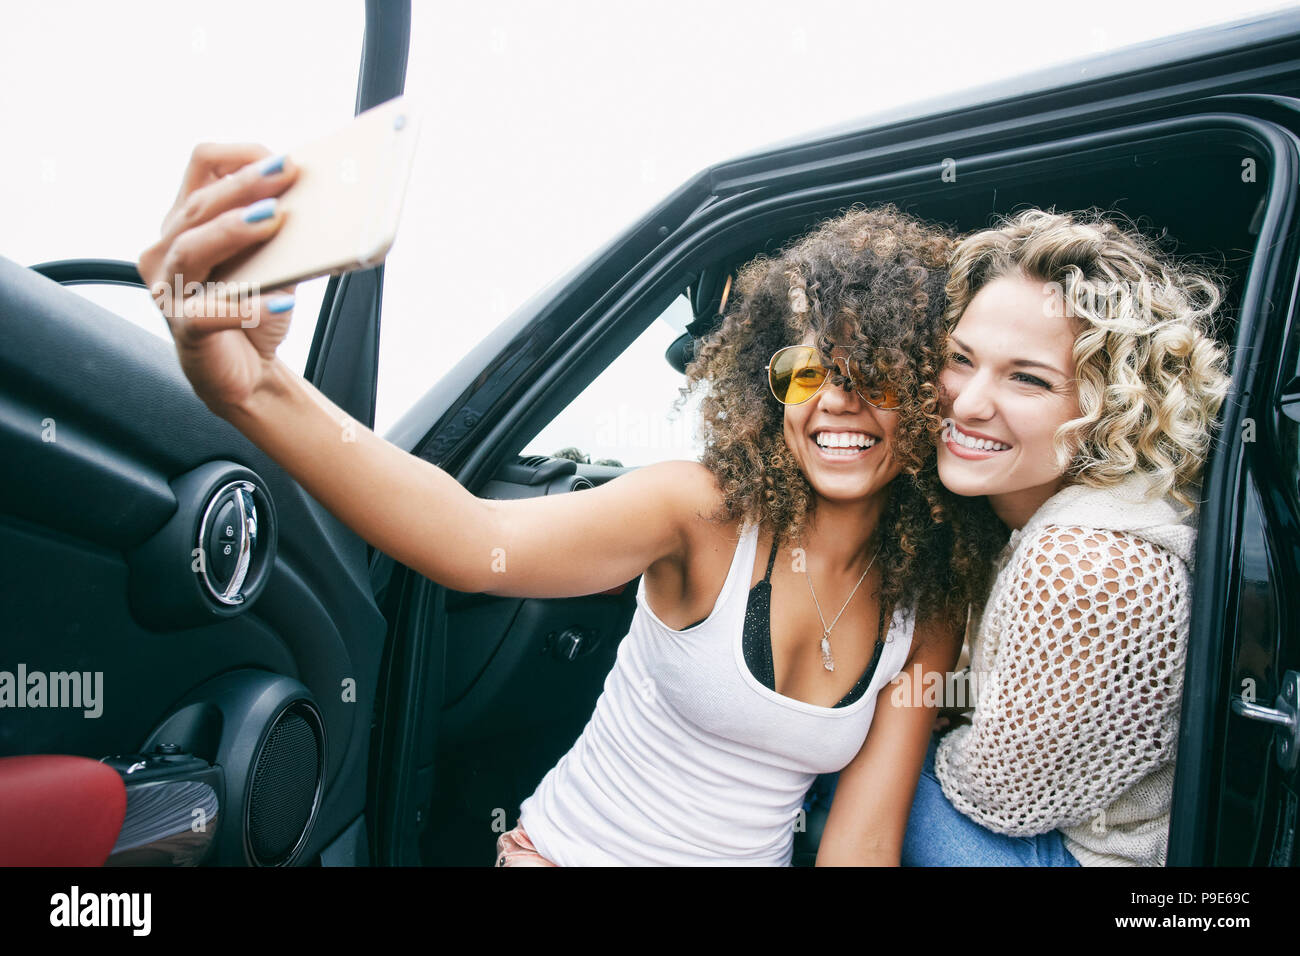 Portrait de deux jeunes femmes smiling blonde et brune avec des cheveux bouclés sitting in car, en tenant avec selfies téléphone mobile. Banque D'Images